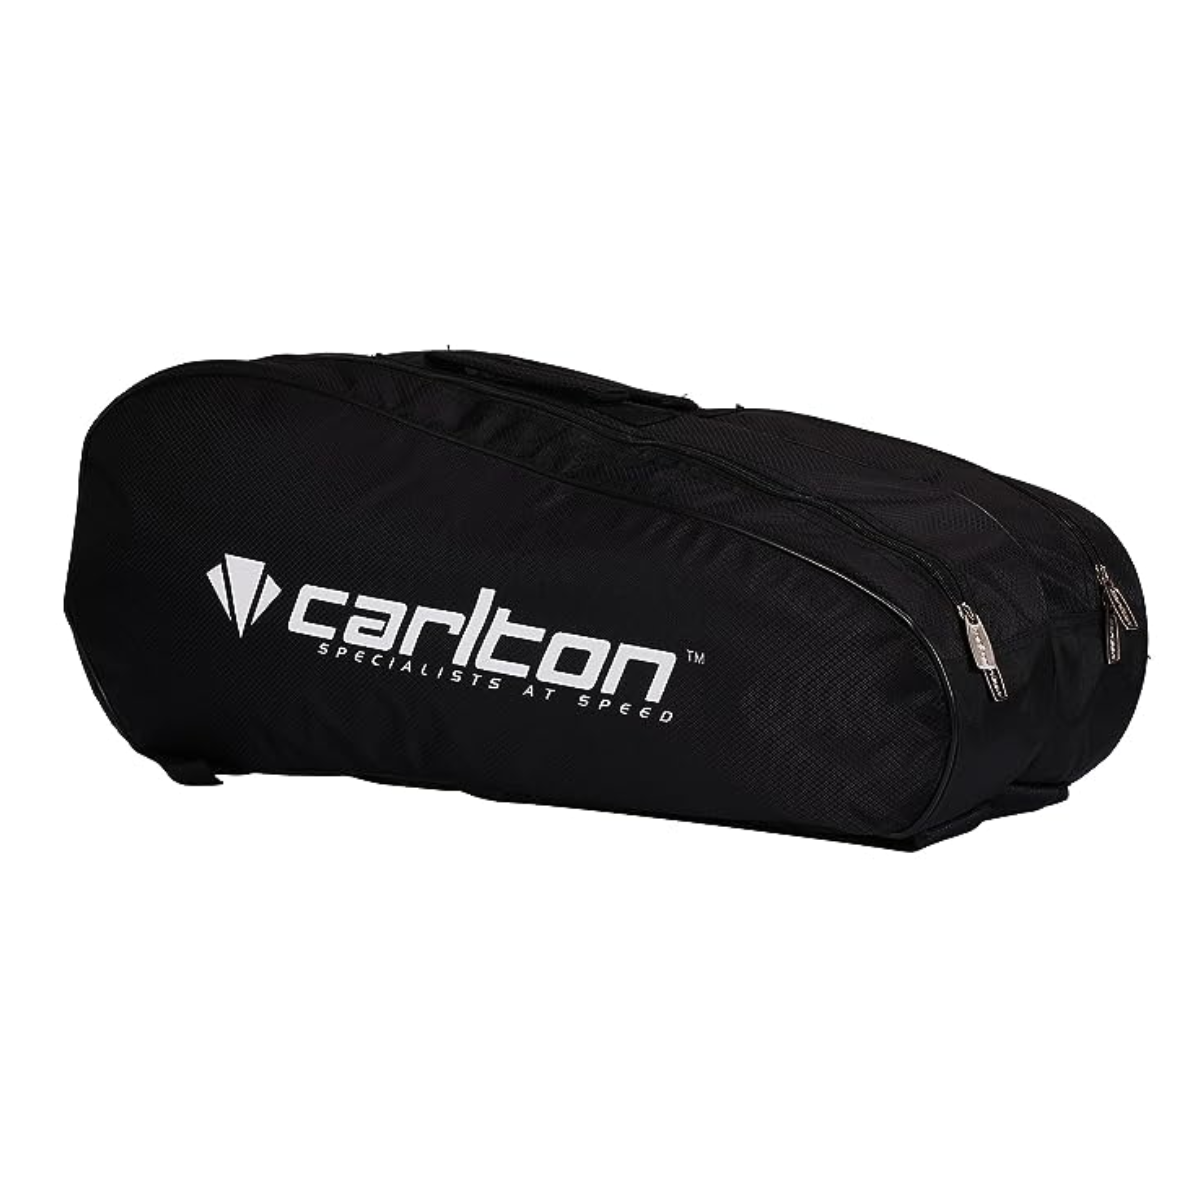 Carlton Vapour Trial 2 Compartment Badminton Kit Bag (Black/Red)